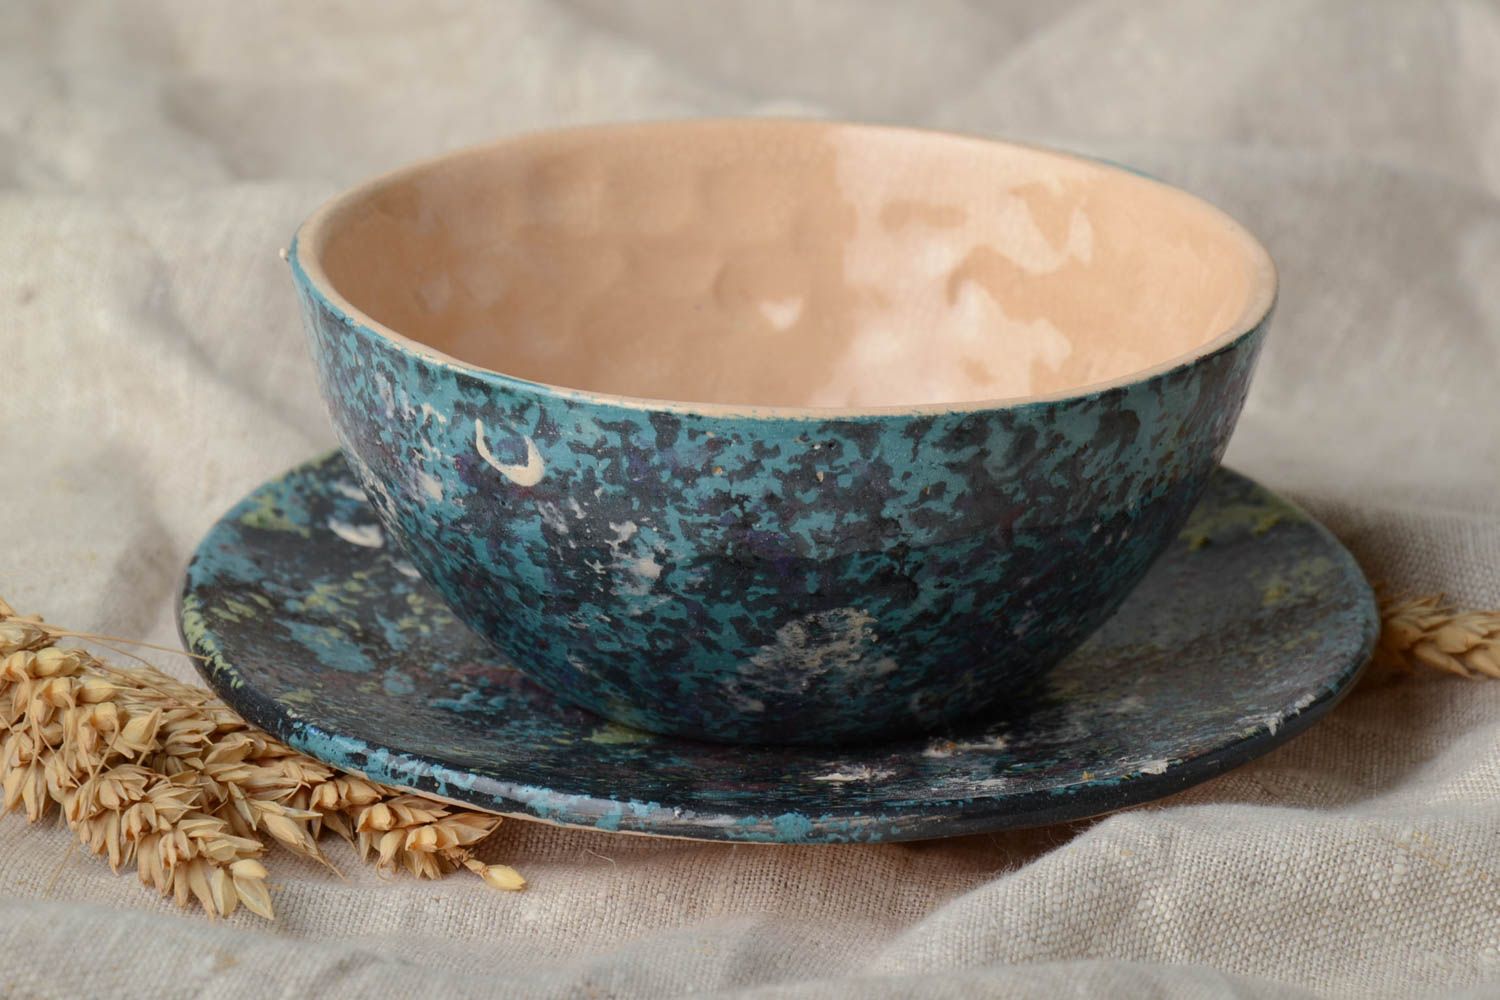 Тарелка с блюдцем для супа комплект темного цвета из глины красивые хэнд мейд фото 1